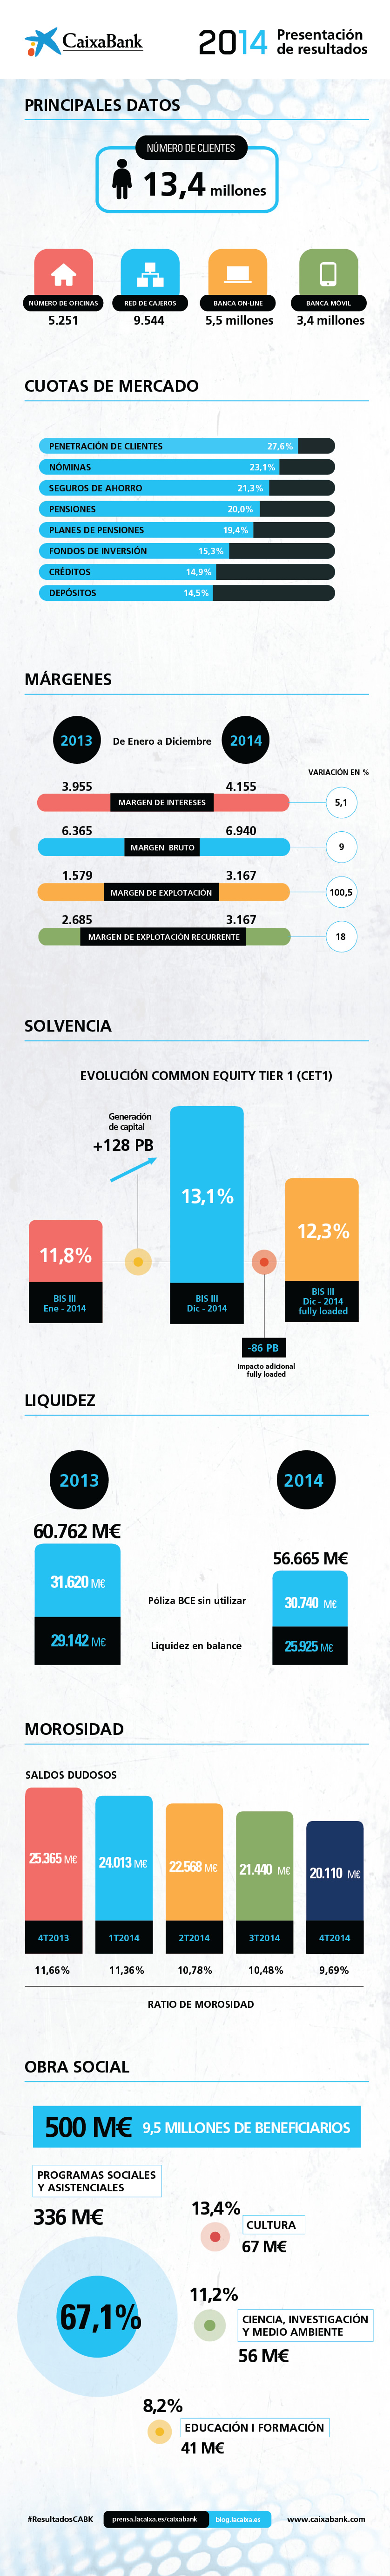 Resultados CaixaBank 2014 - infografía